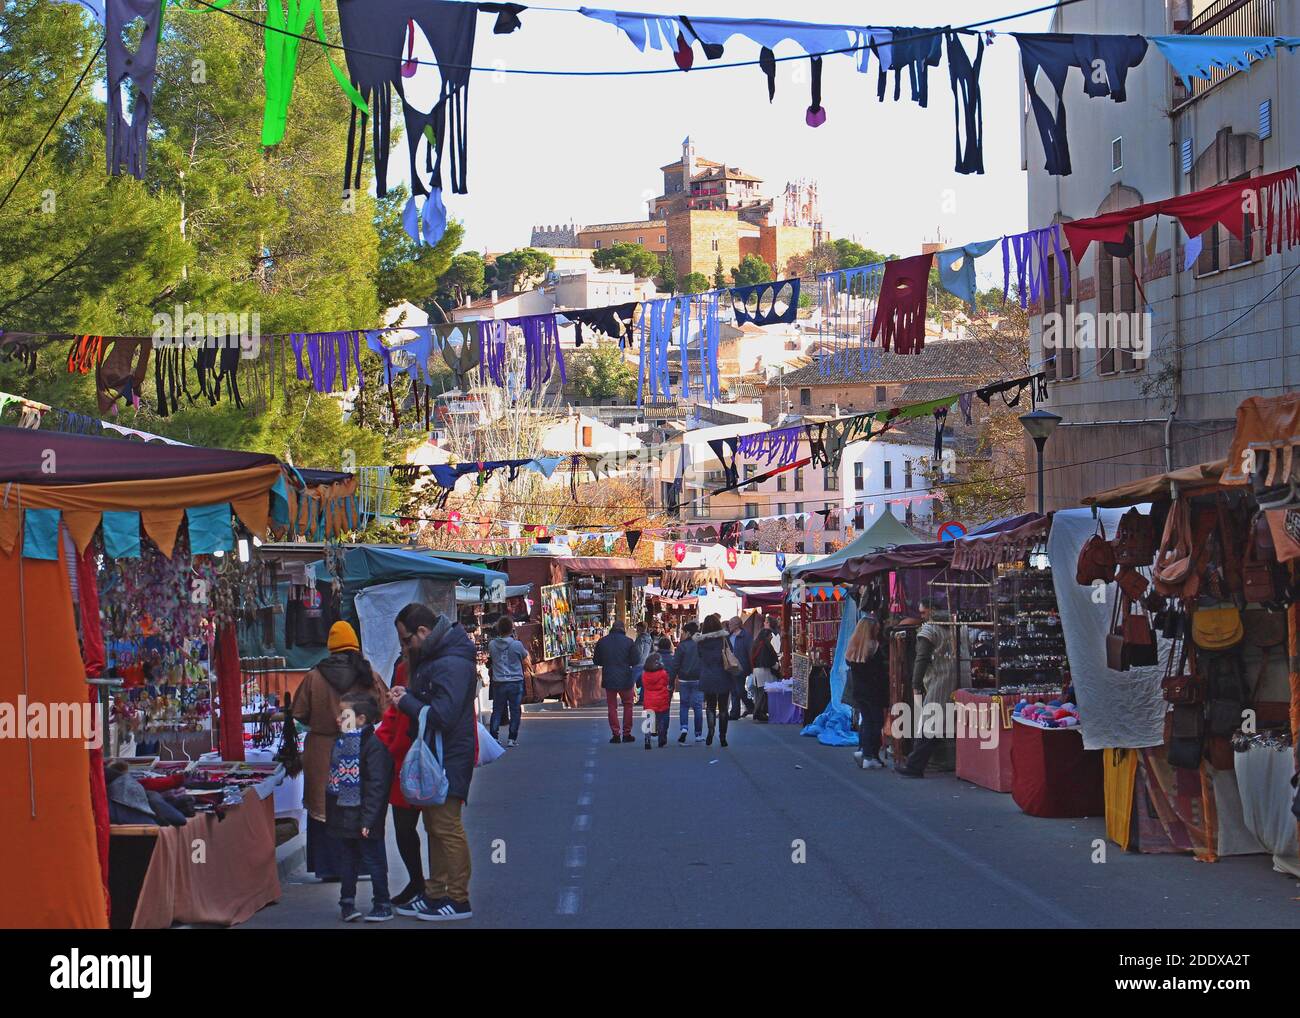 Caravaca de la Cruz, région de Murcie, Espagne. Le festival du marché médiéval et une vue sur la rue principale du marché jusqu'au château médiéval sur la colline. Banque D'Images